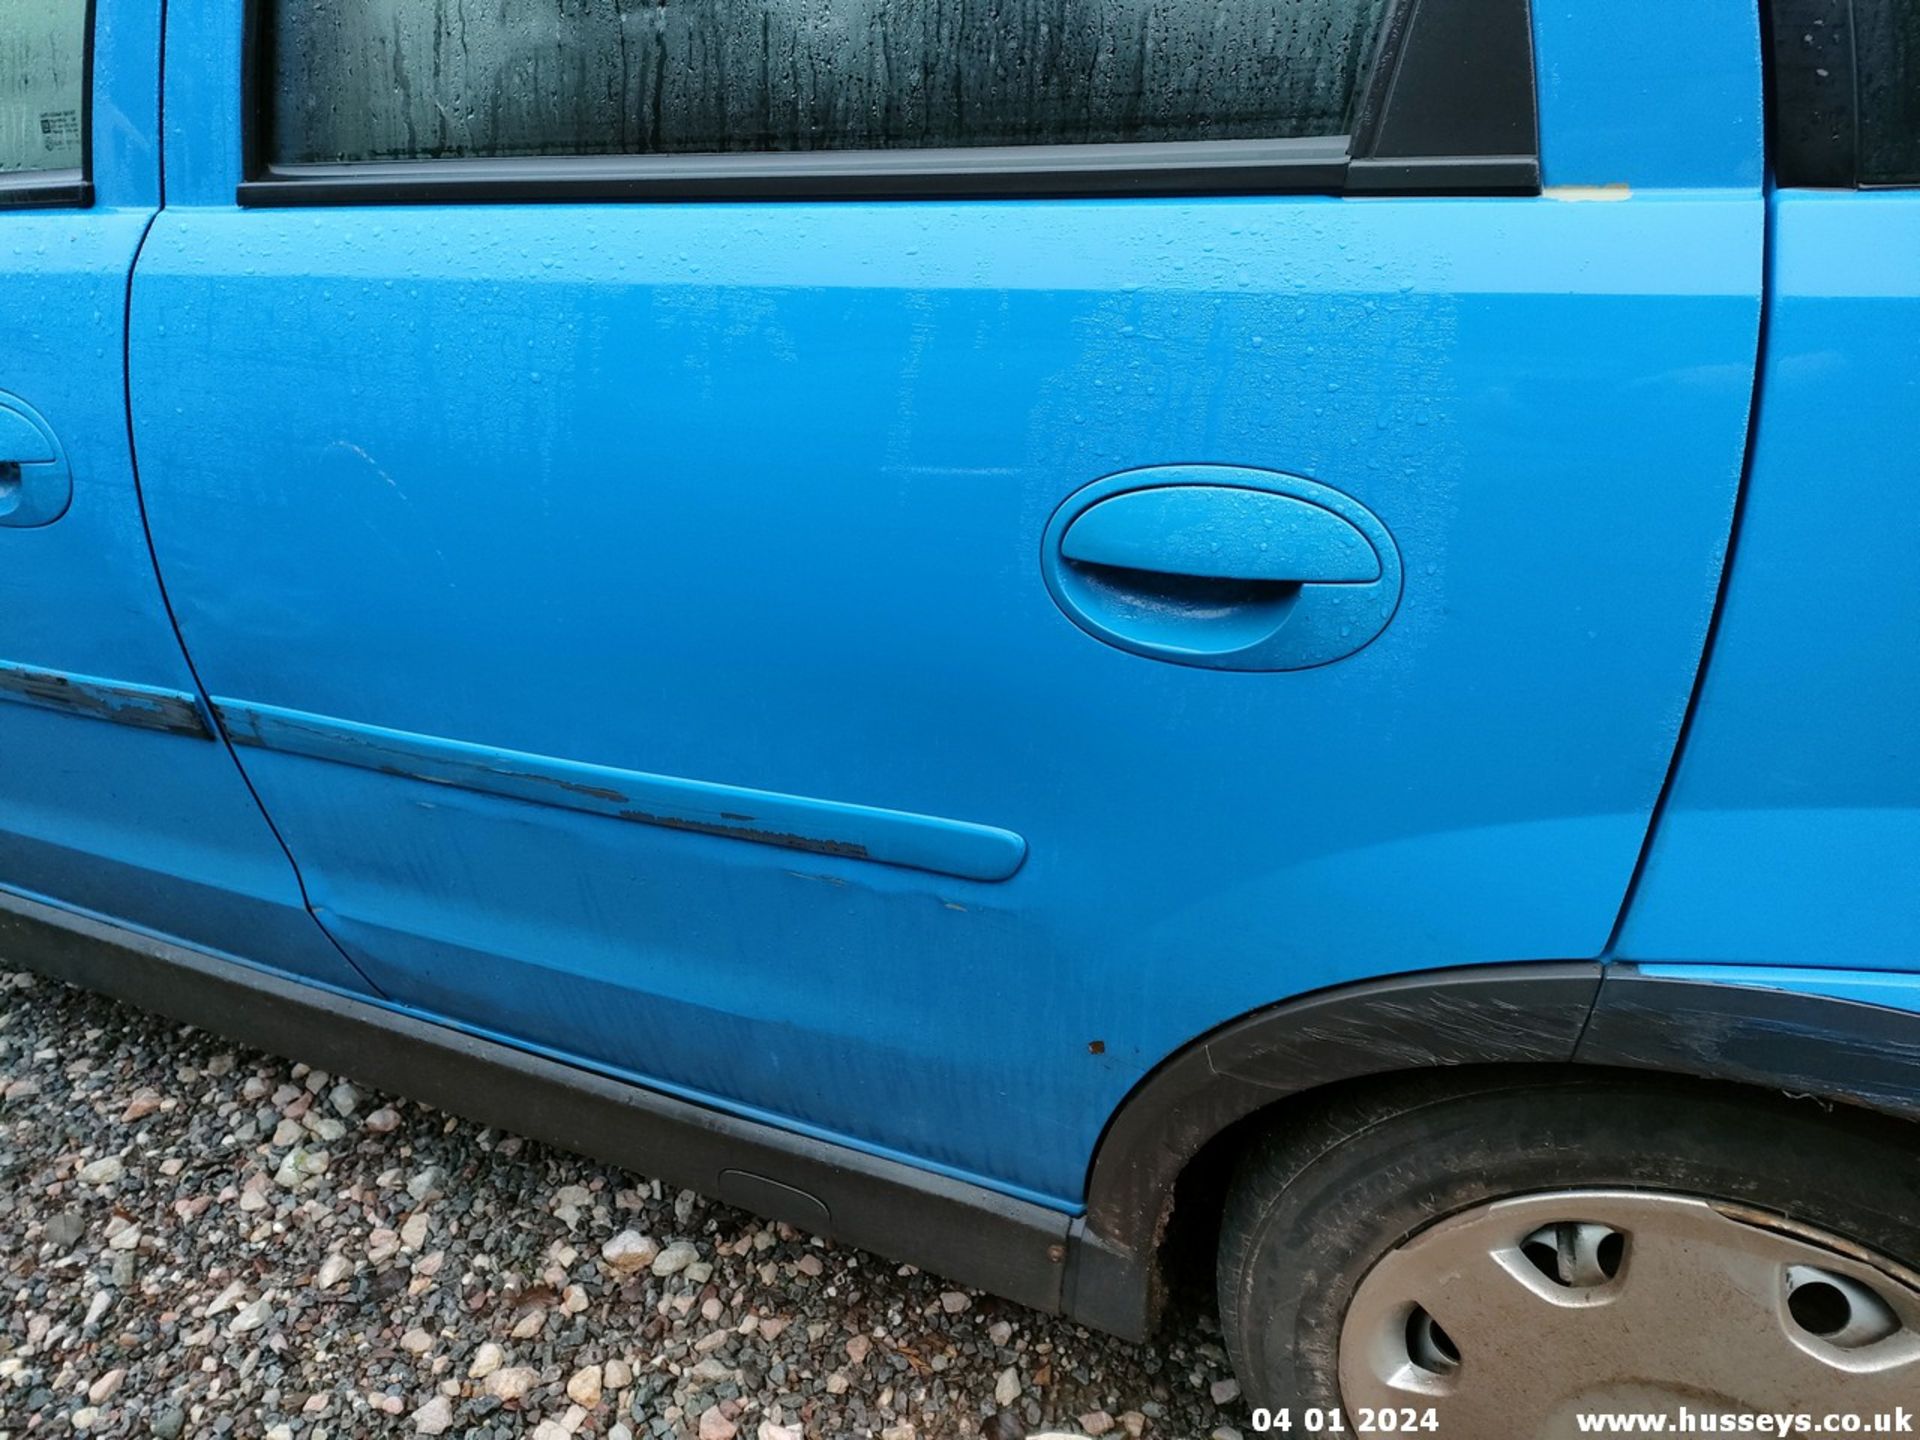 04/04 VAUXHALL CORSA DESIGN 16V - 1199cc 5dr Hatchback (Blue, 96k) - Image 16 of 38